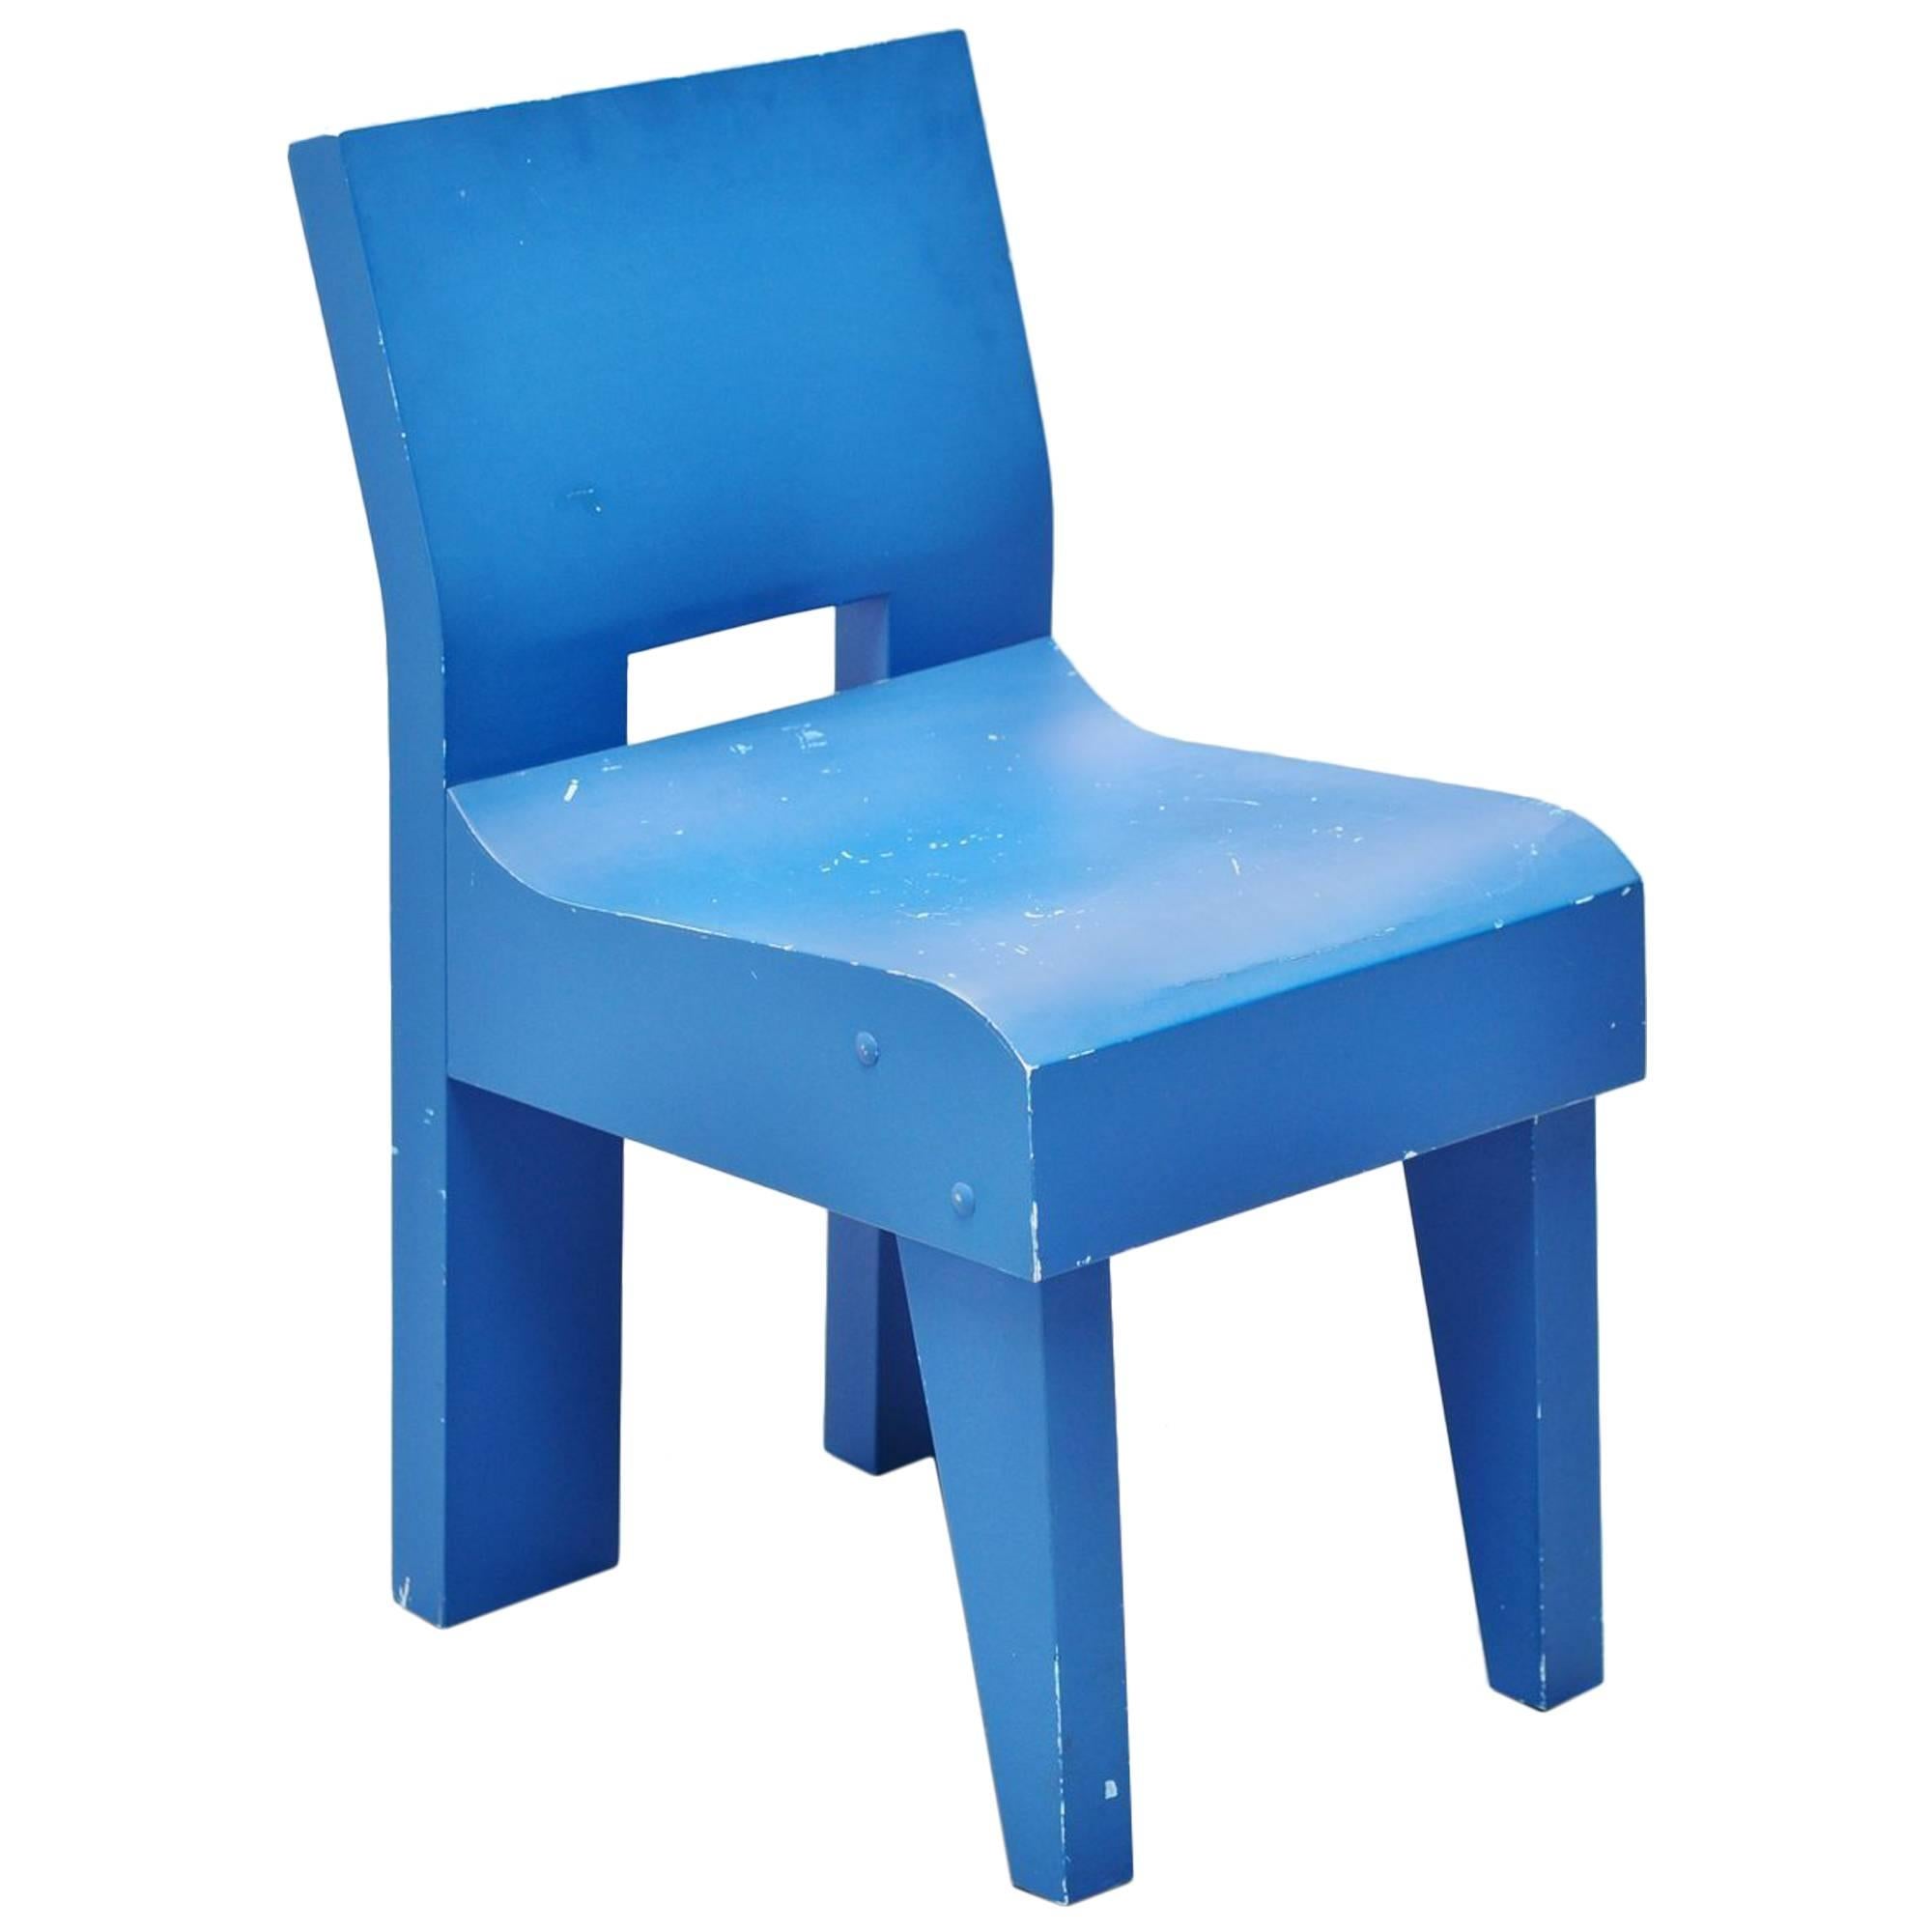 Martin Visser Modernist Prototype Chair SE20 Spectrum, 1988